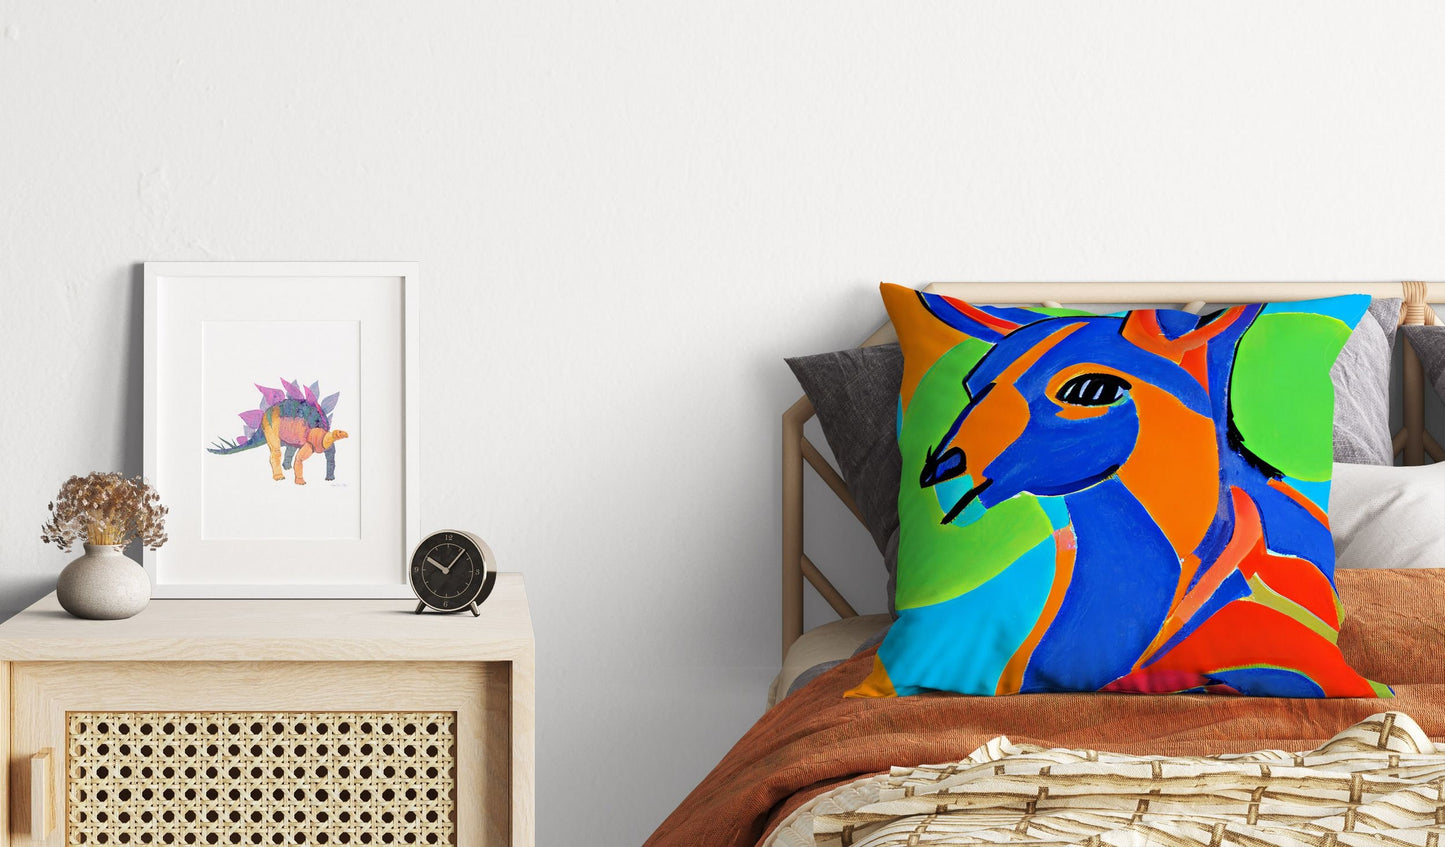 Australian Wildlife Kangaroo Decorative Pillow, Abstract Art Pillow, Art Pillow, Colorful Pillow Case, Fashion, 18 X 18 Pillow Covers